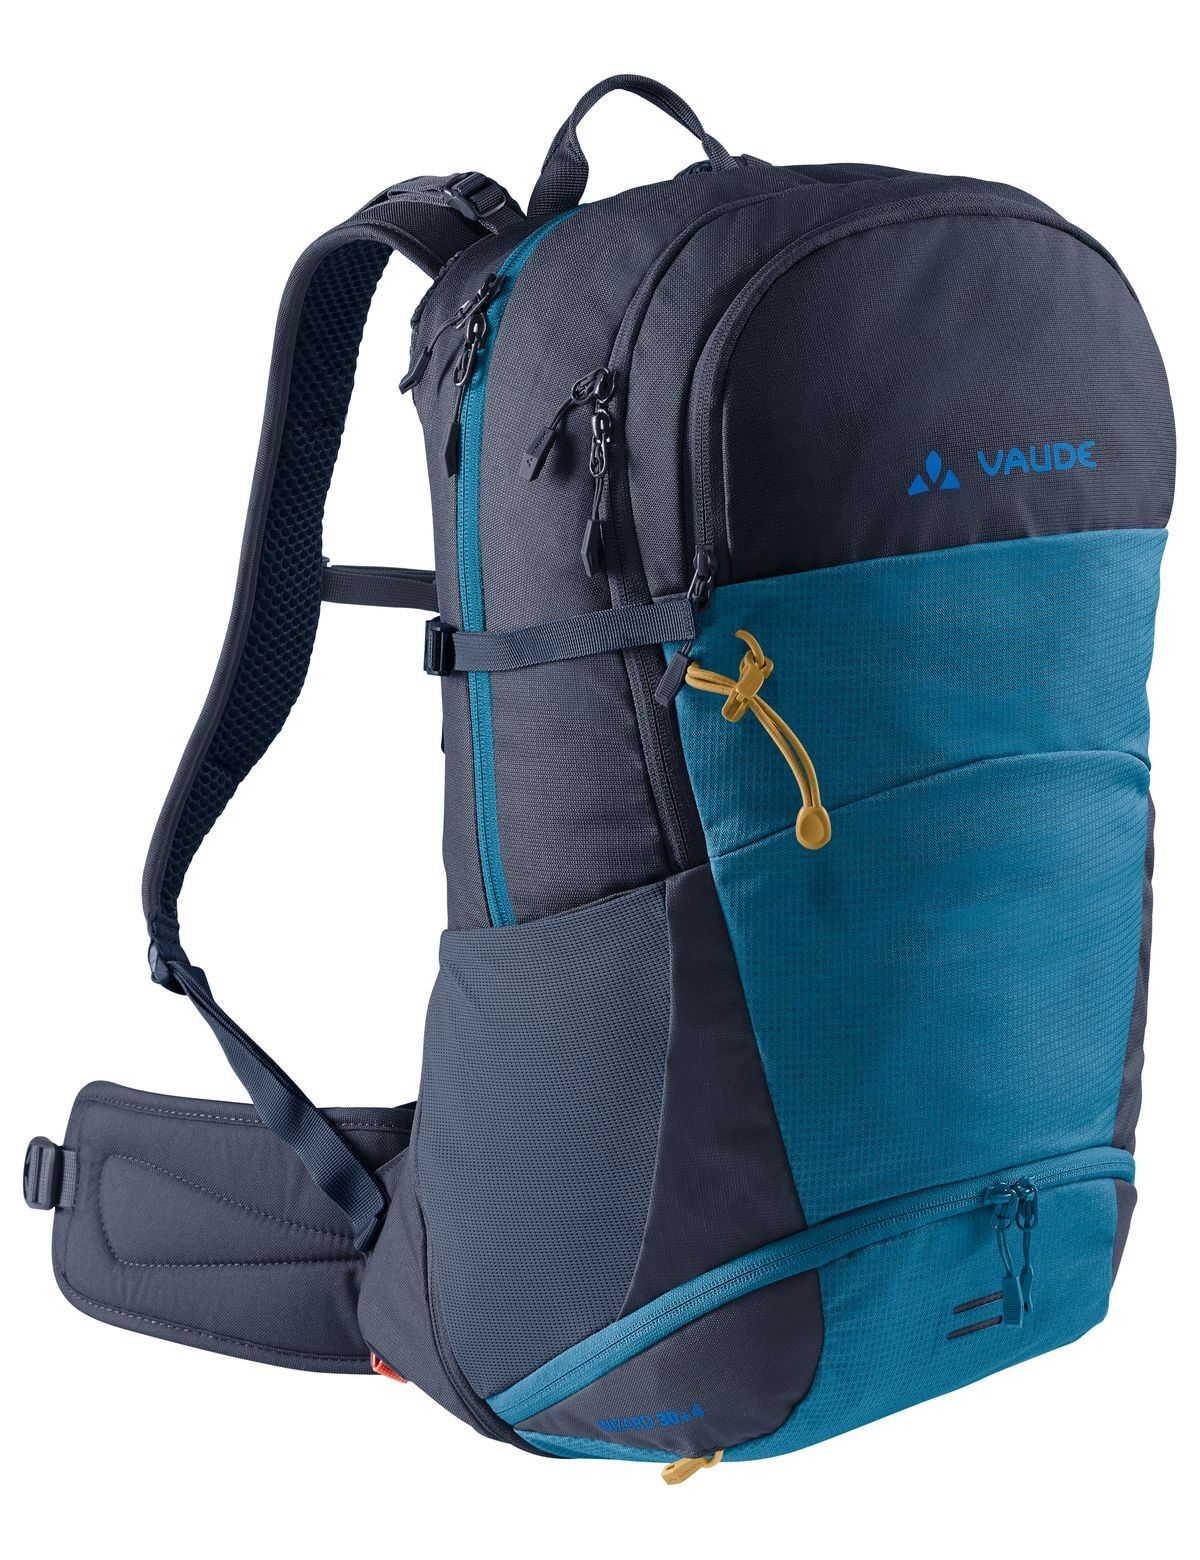 Vaude Wizard 30+4 - Walking backpack